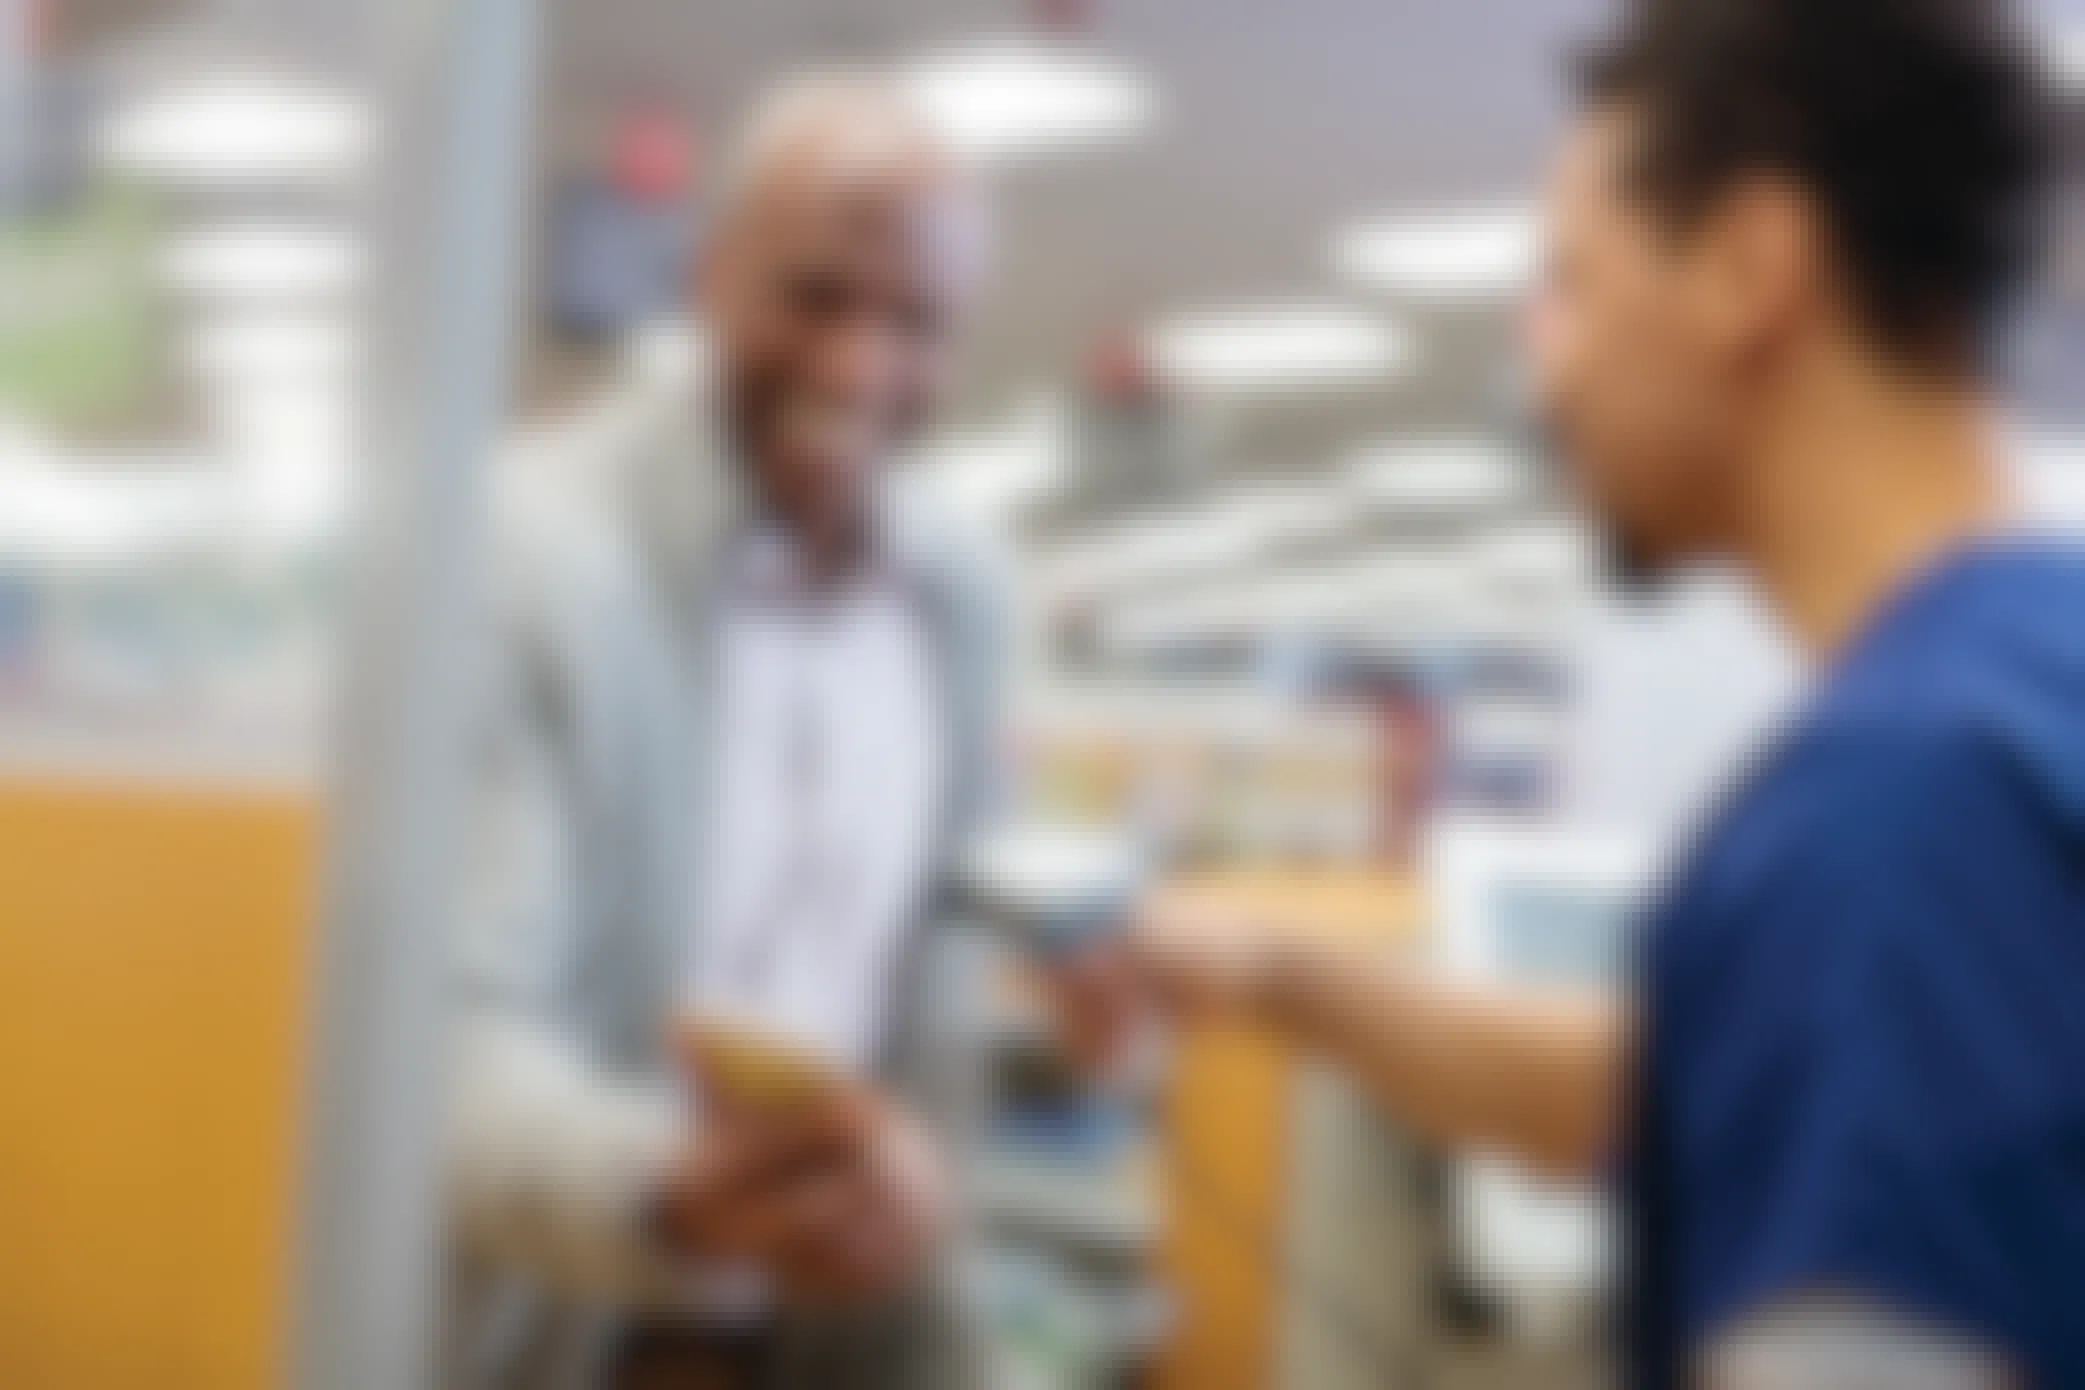 cvs pharmacist scans customer's app at the register